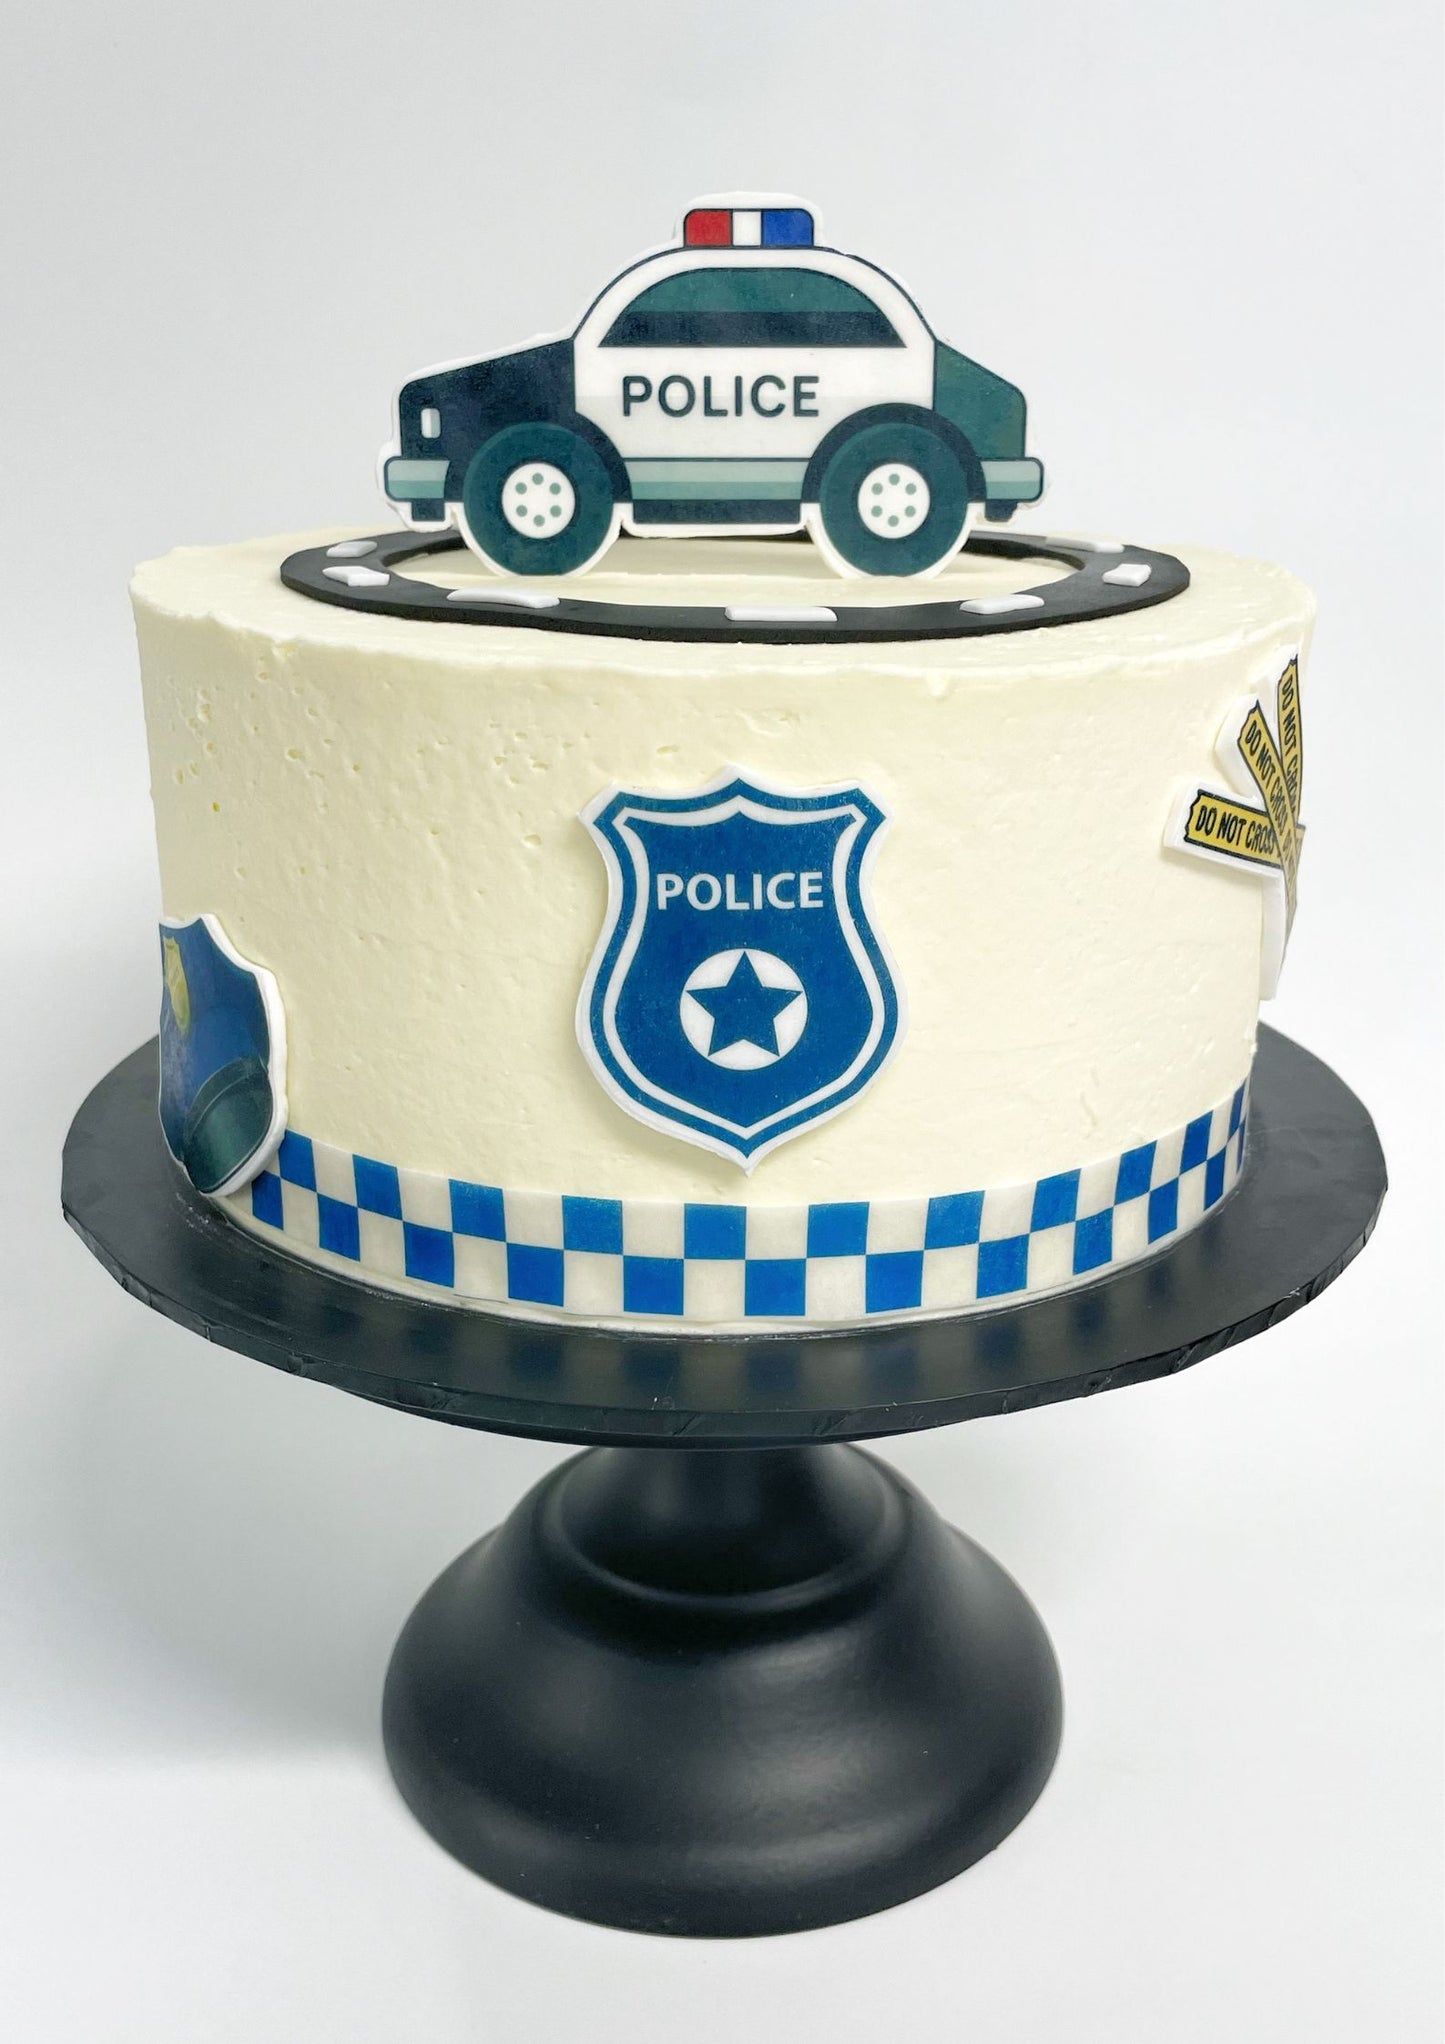 Police DIY Cake Kit, Patrol cake, Police Man Cake, Easy Cake Kit.